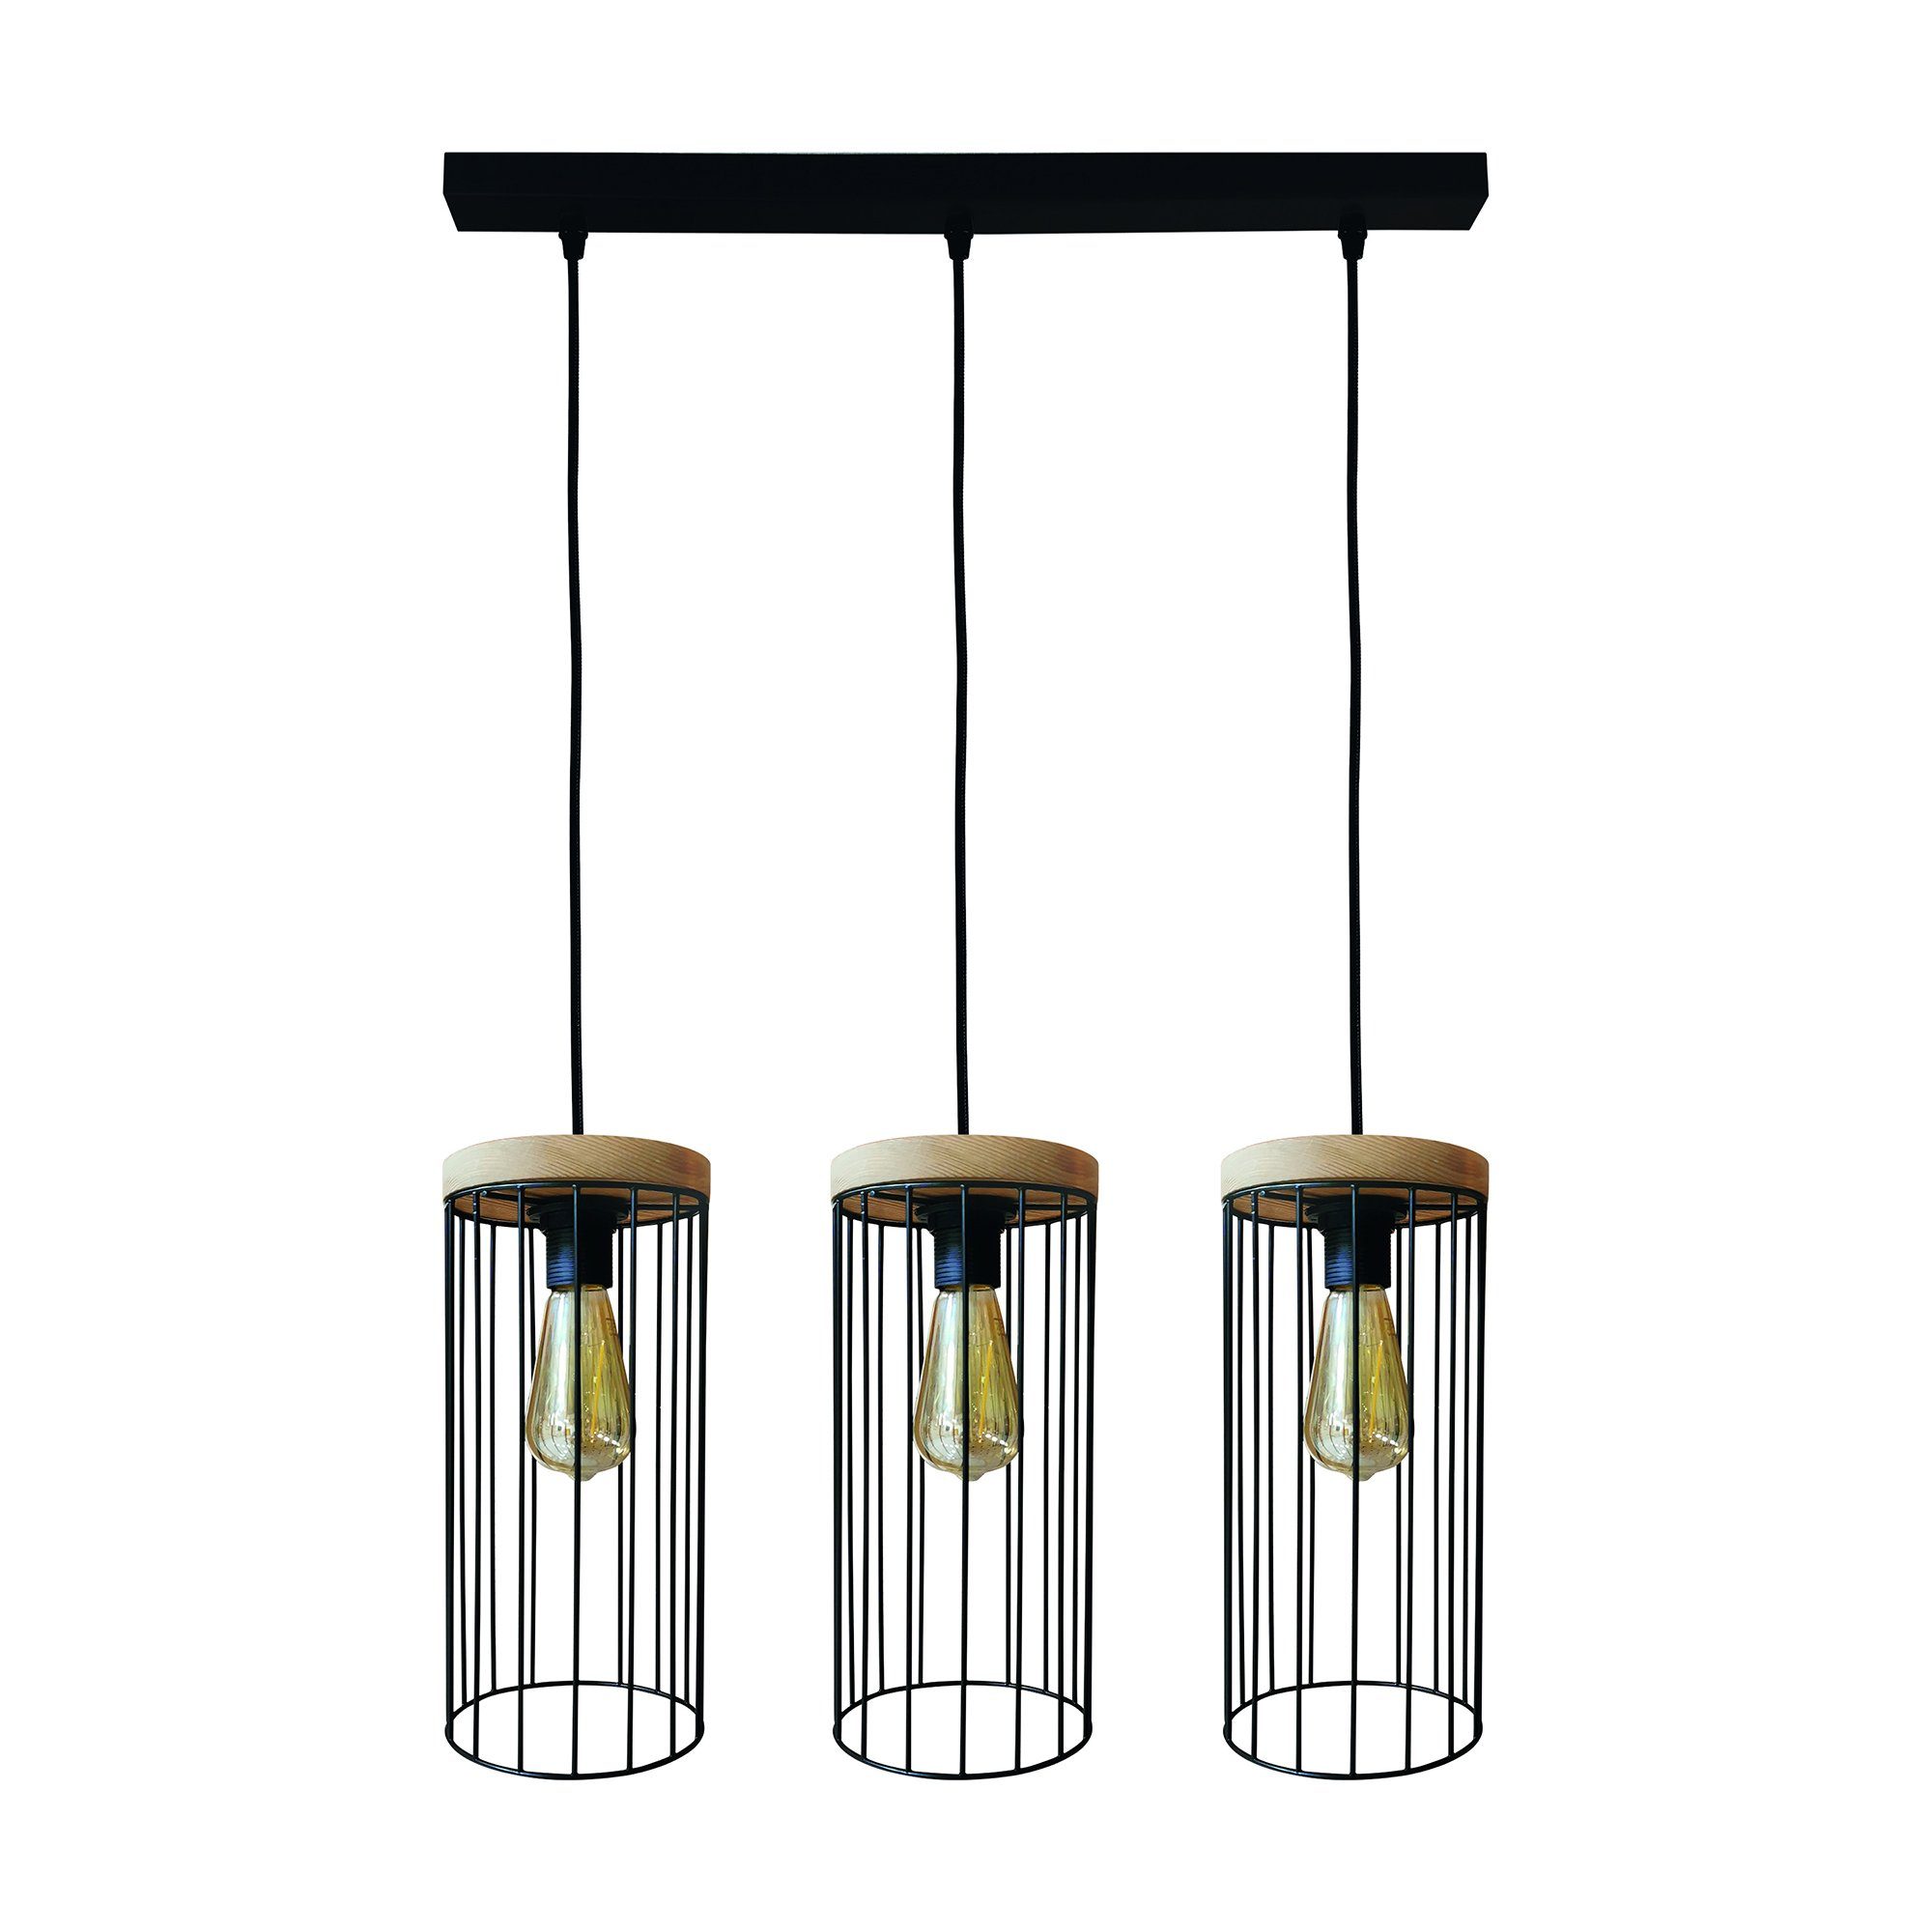 britop lighting hanglamp timeo wood max hanglamp, trendy kap van metaal, met eikenhout zwart